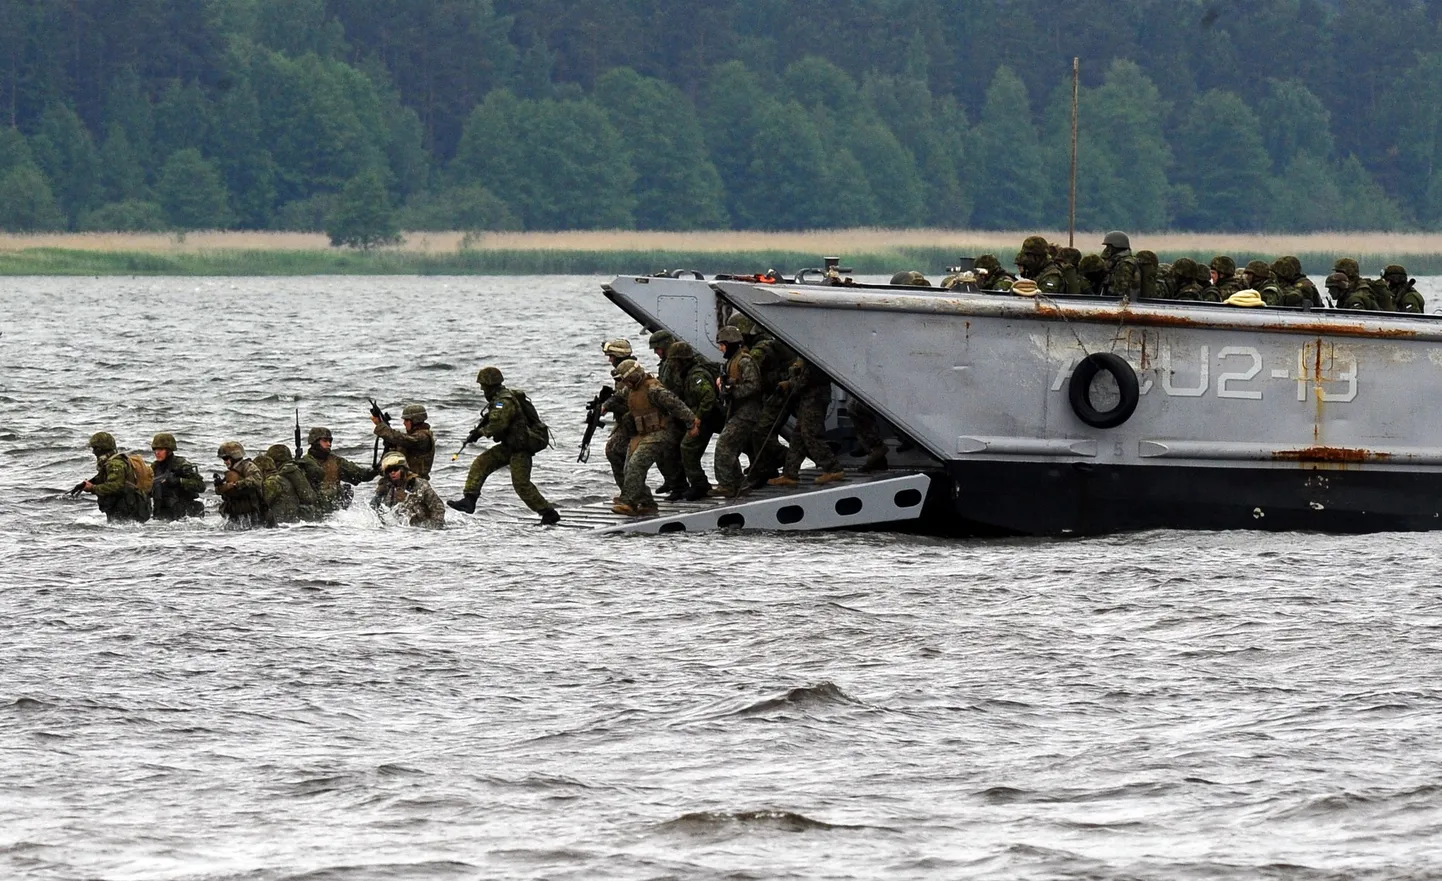 Kaitseväe ja Ameerika Ühendriikide merejalaväe ühisõppus Baltops juunis 2010 Hara lahel Loksa sadama lähistel.